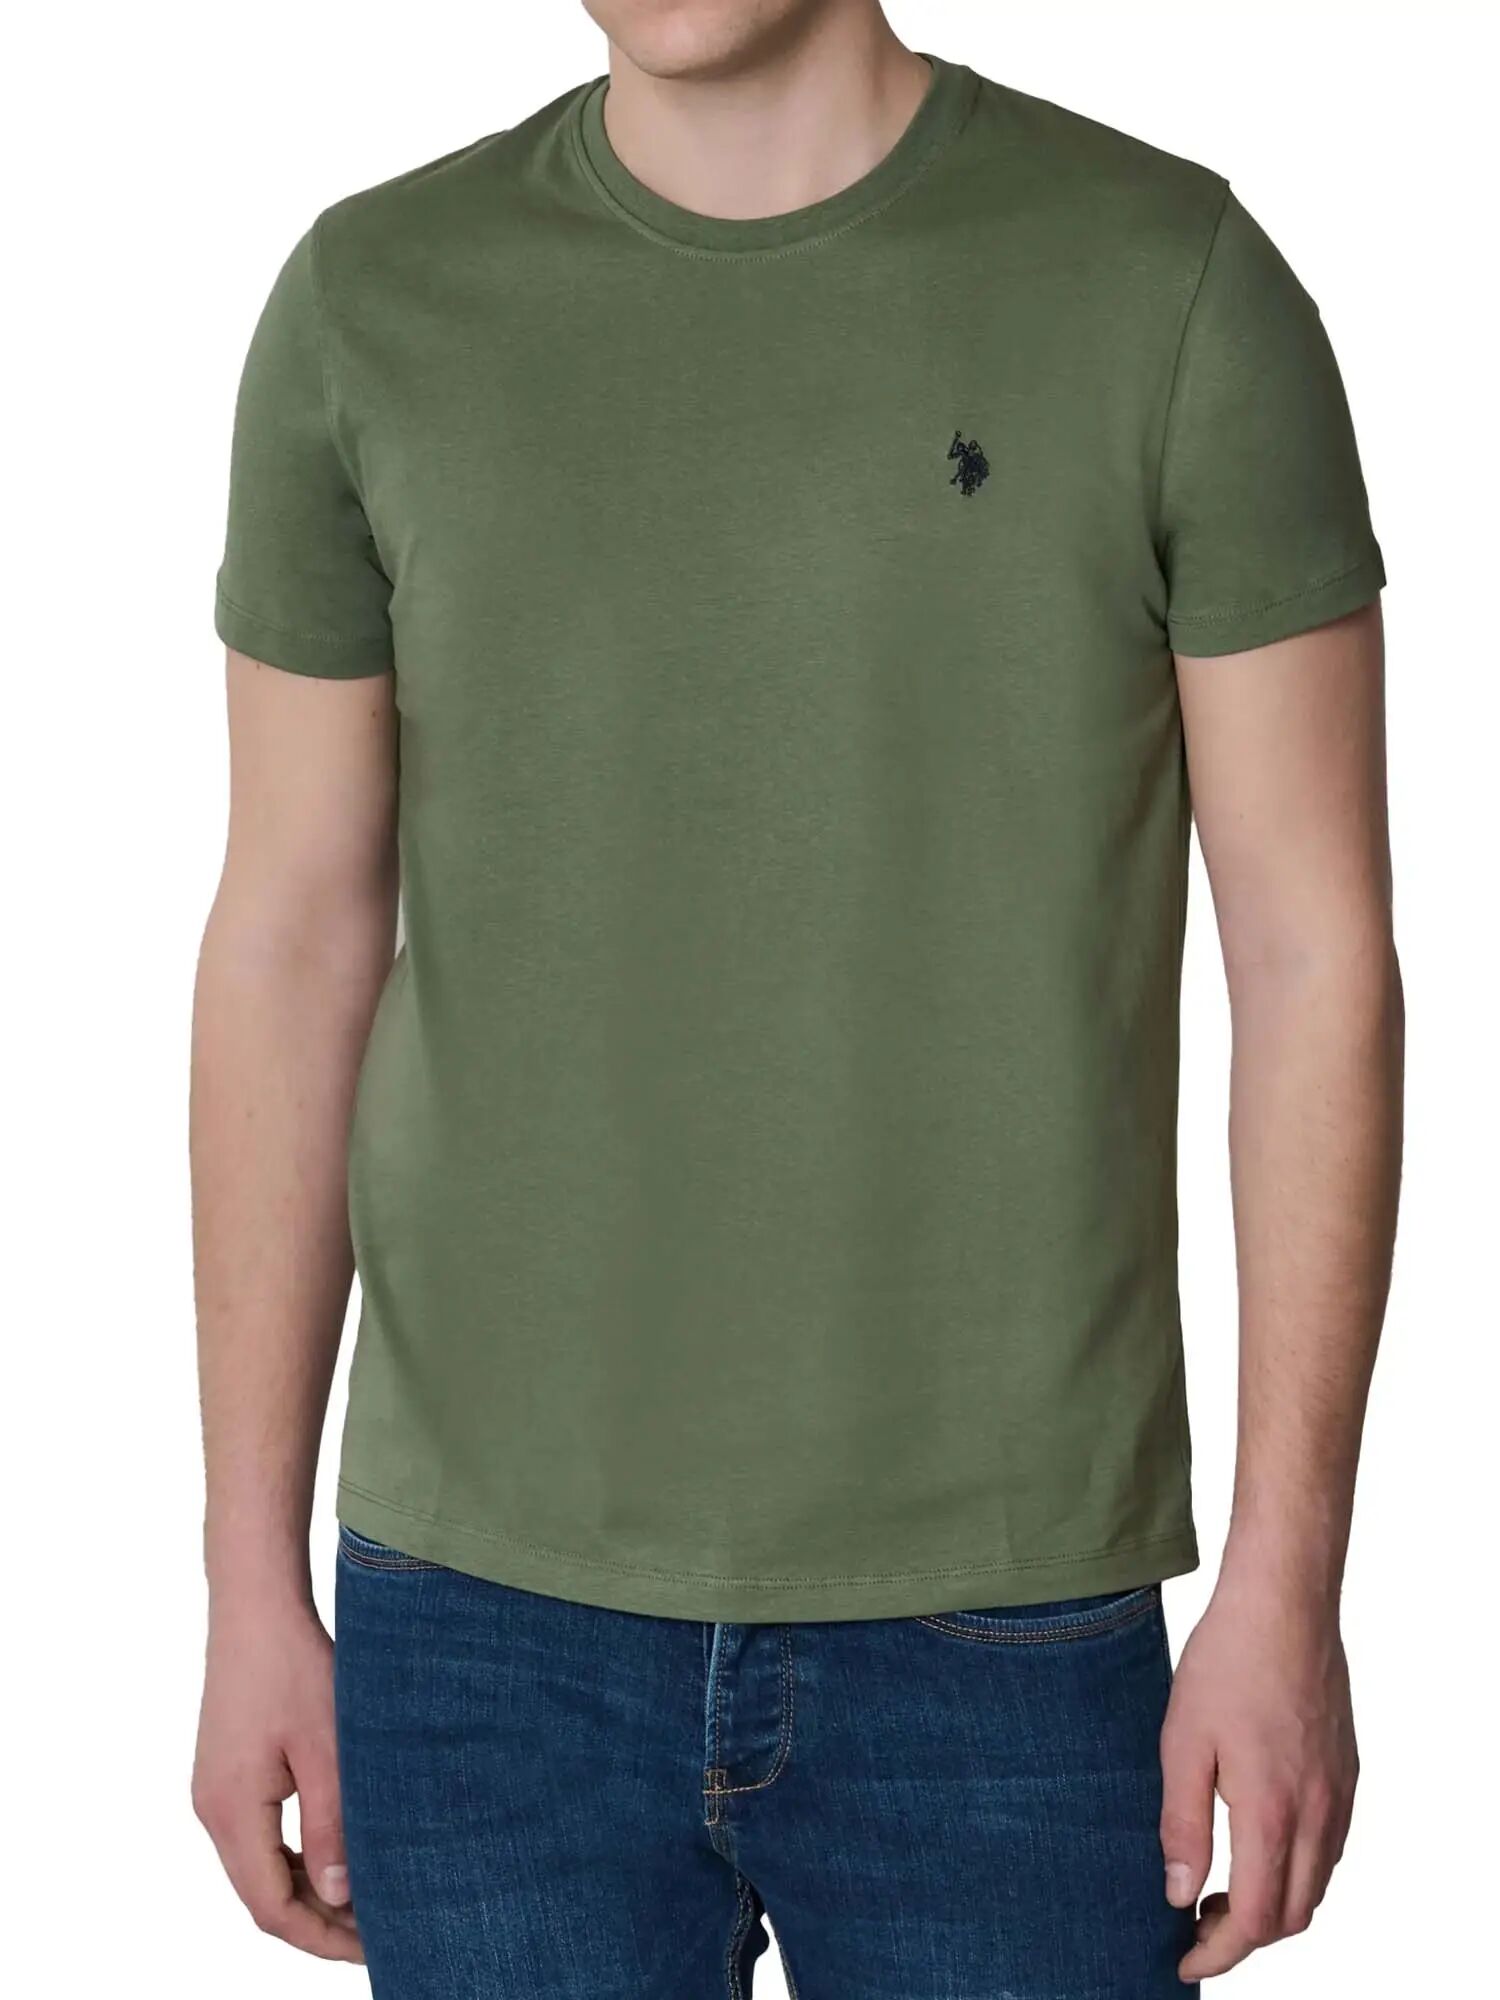 Us Polo Assn. T-shirt Uomo Colore Militare MILITARE S